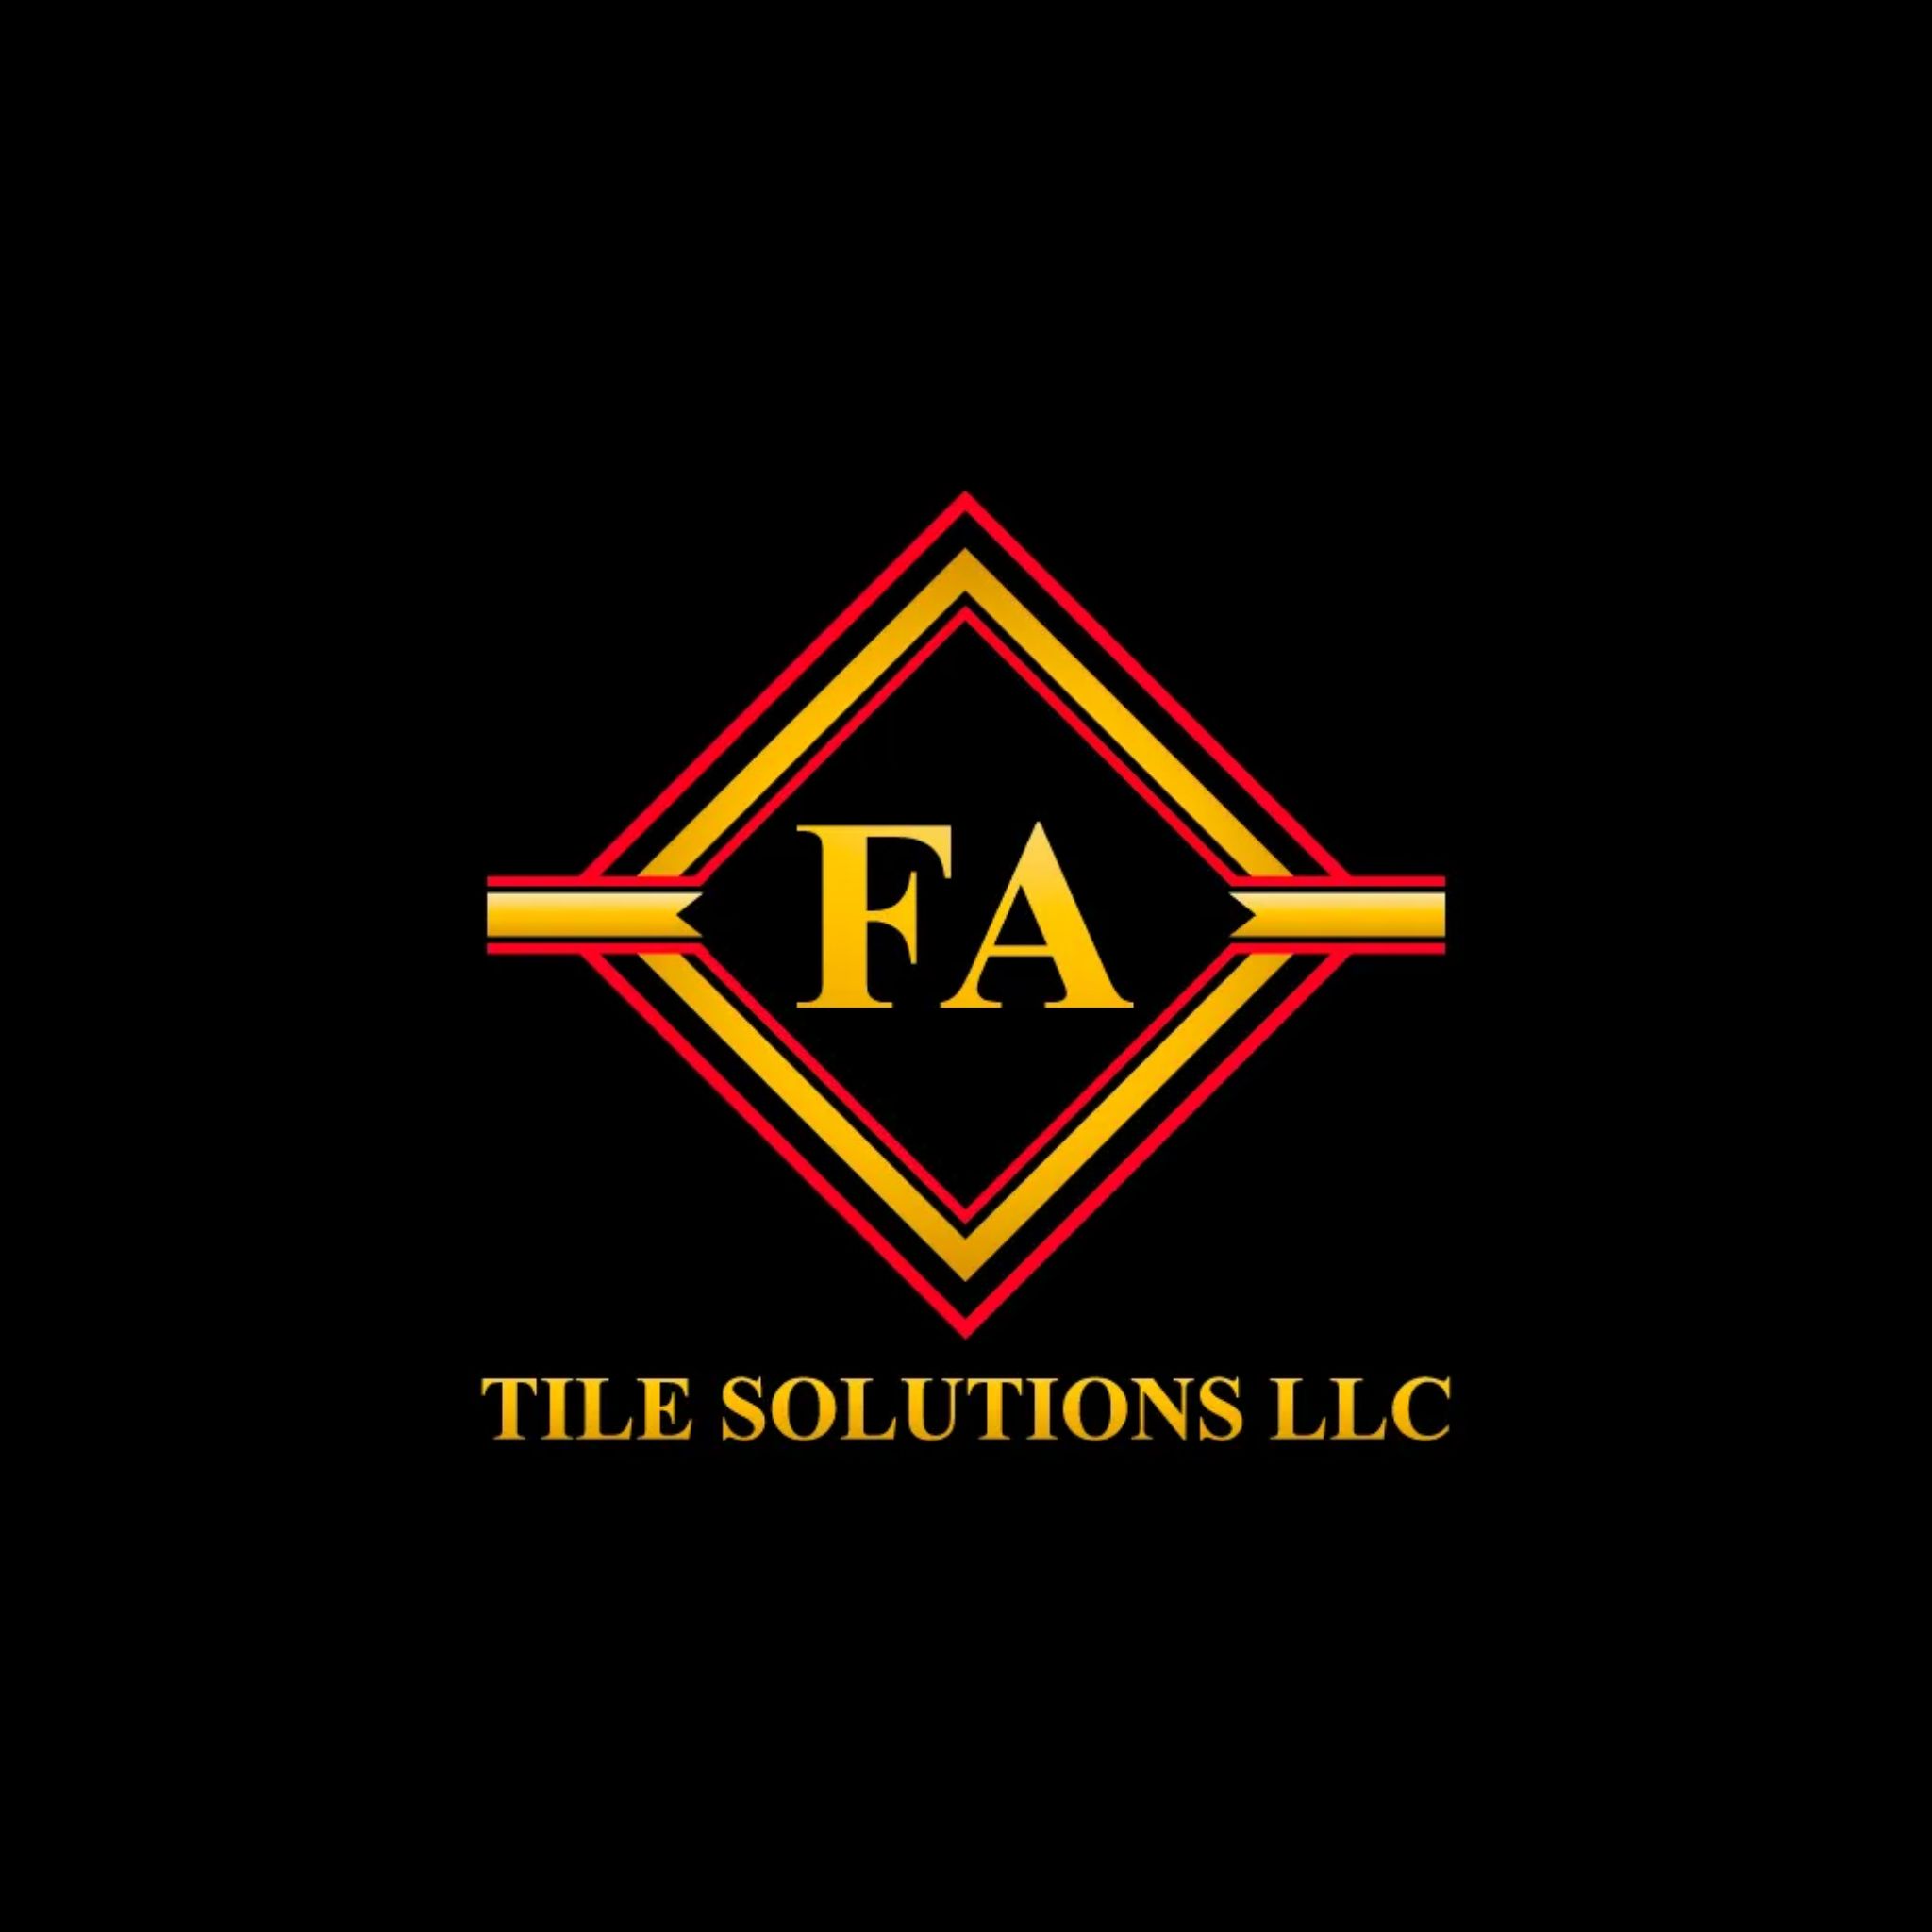 FA Tile Solutions LLC